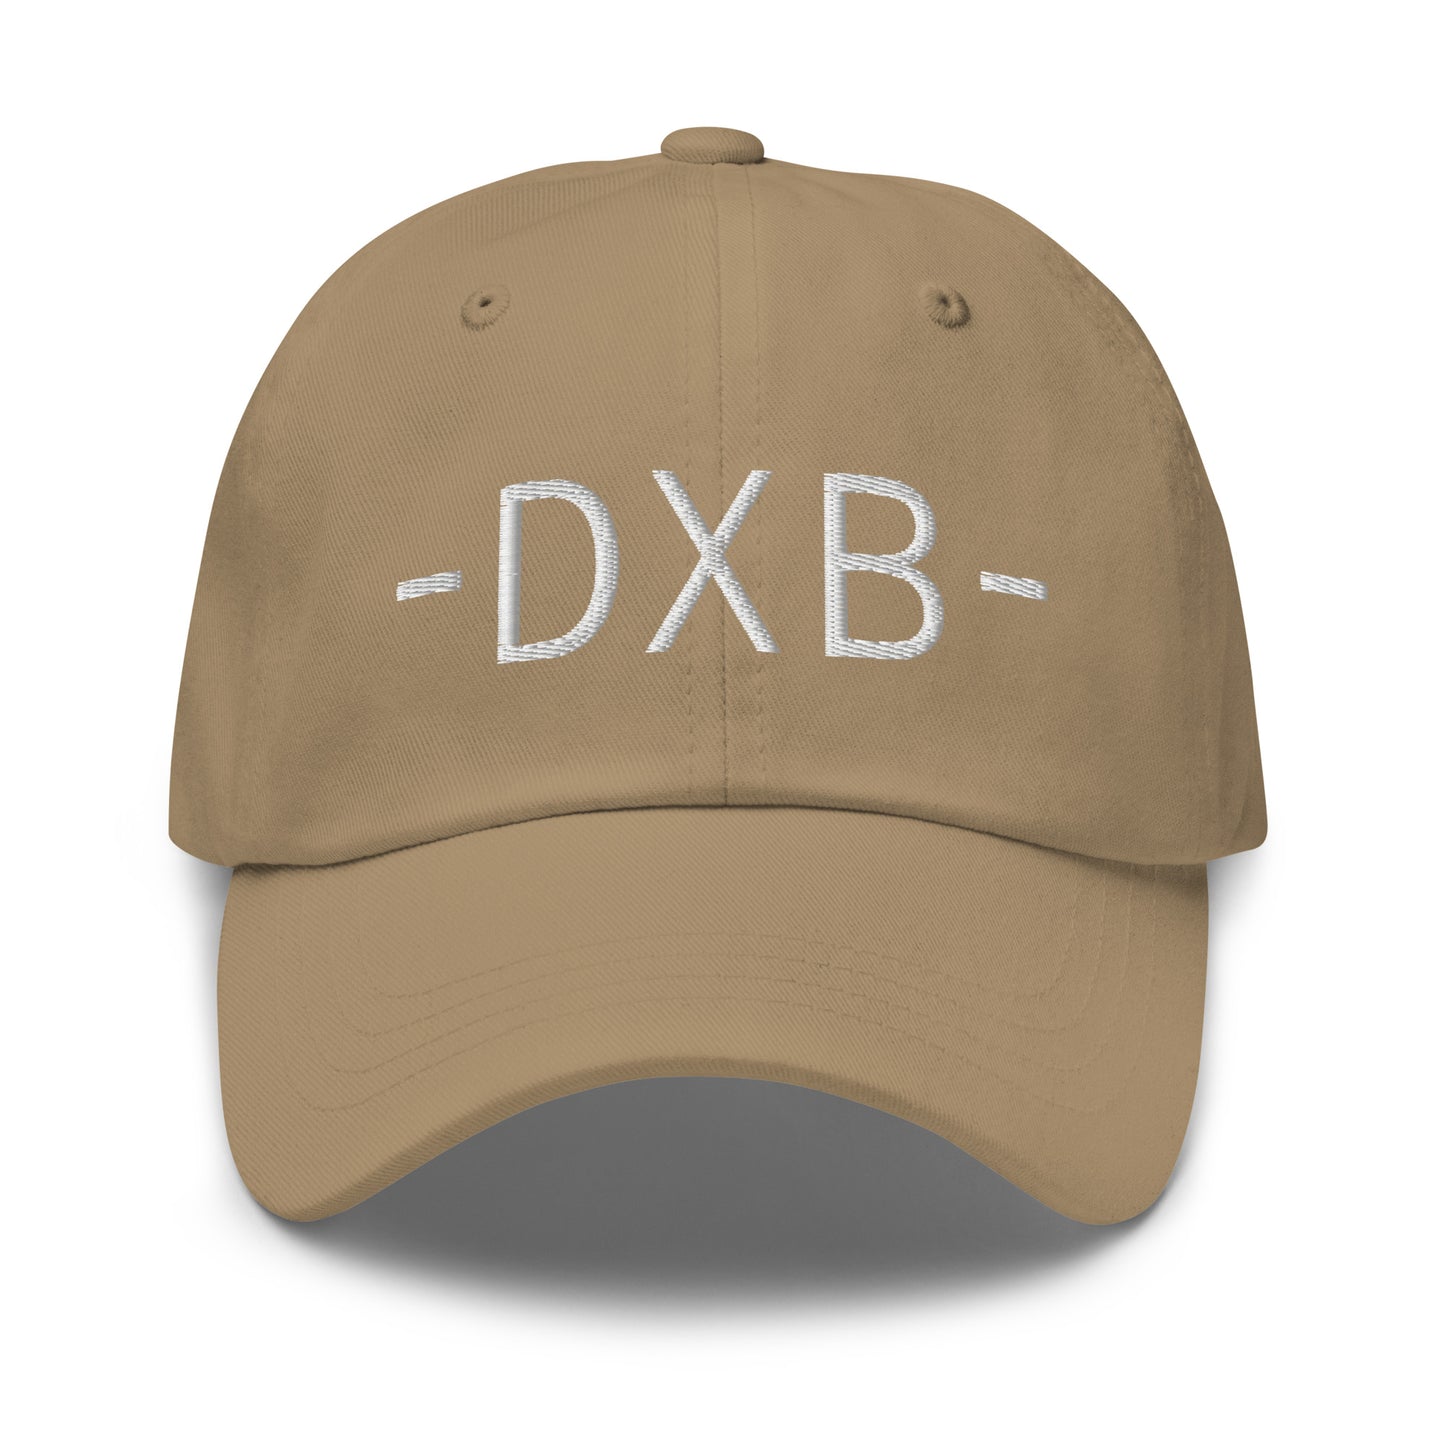 Souvenir Baseball Cap - White • DXB Dubai • YHM Designs - Image 21